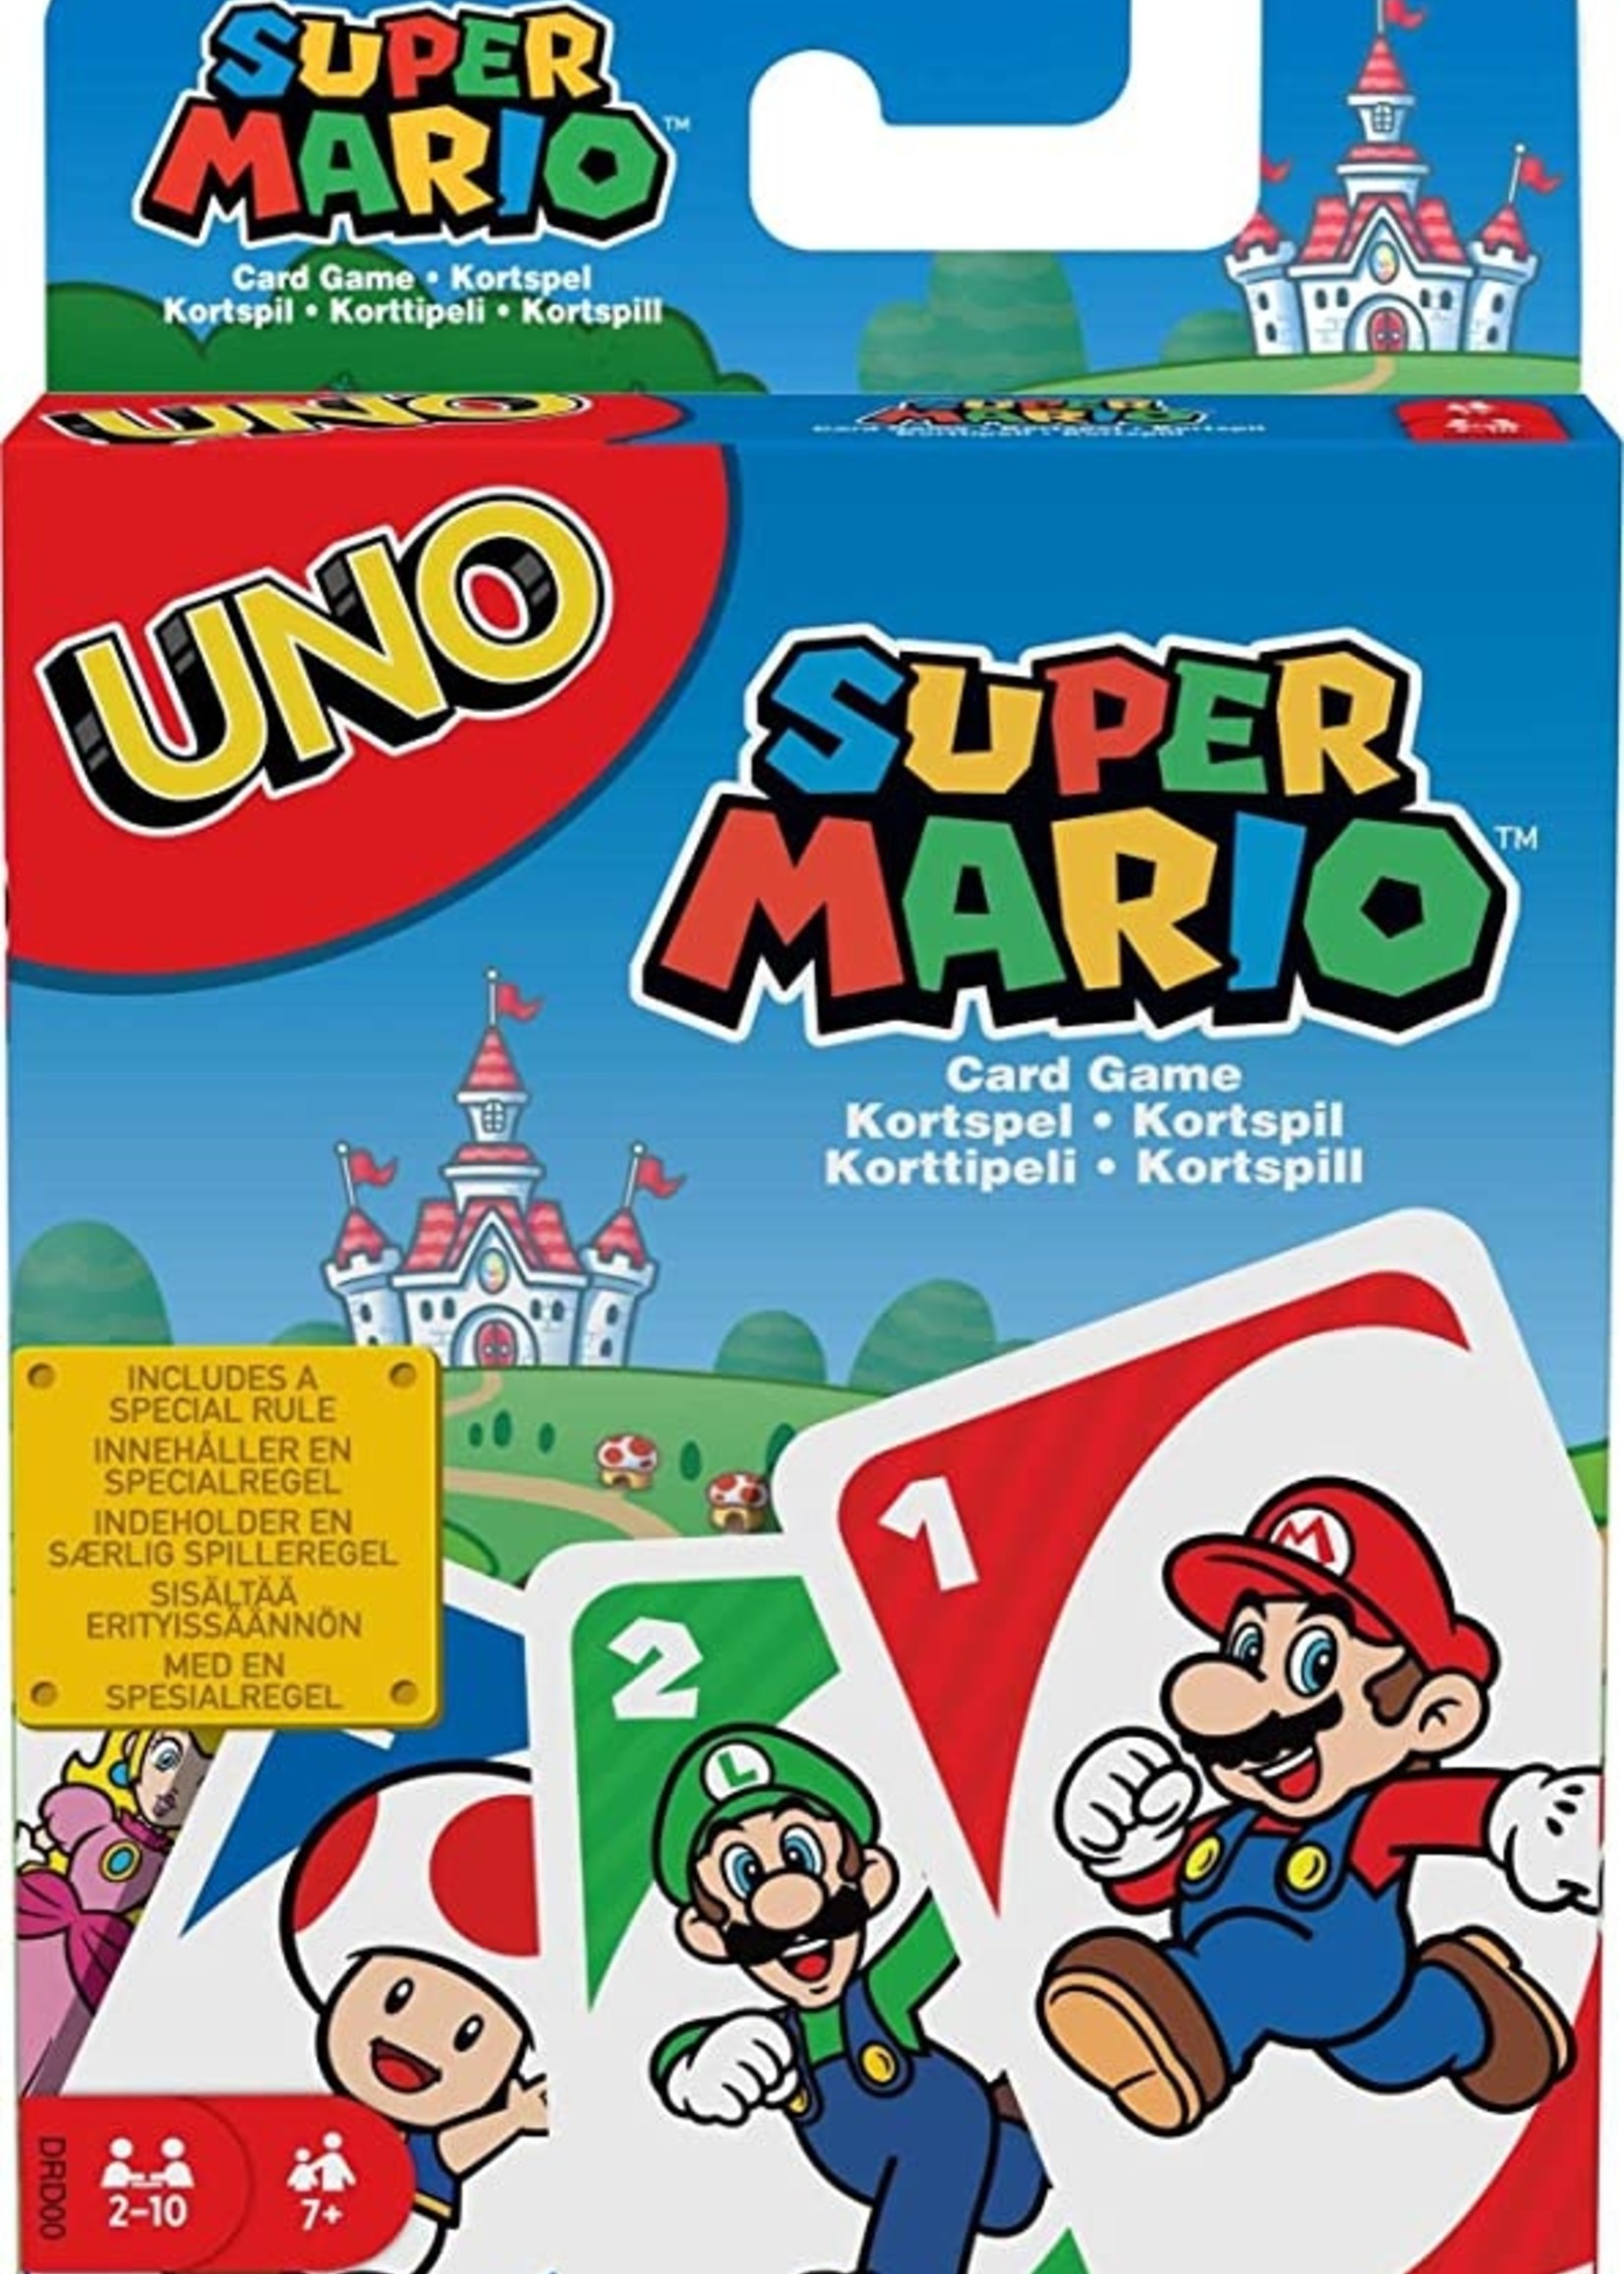 Card Game uno Super Mario UNO Cards